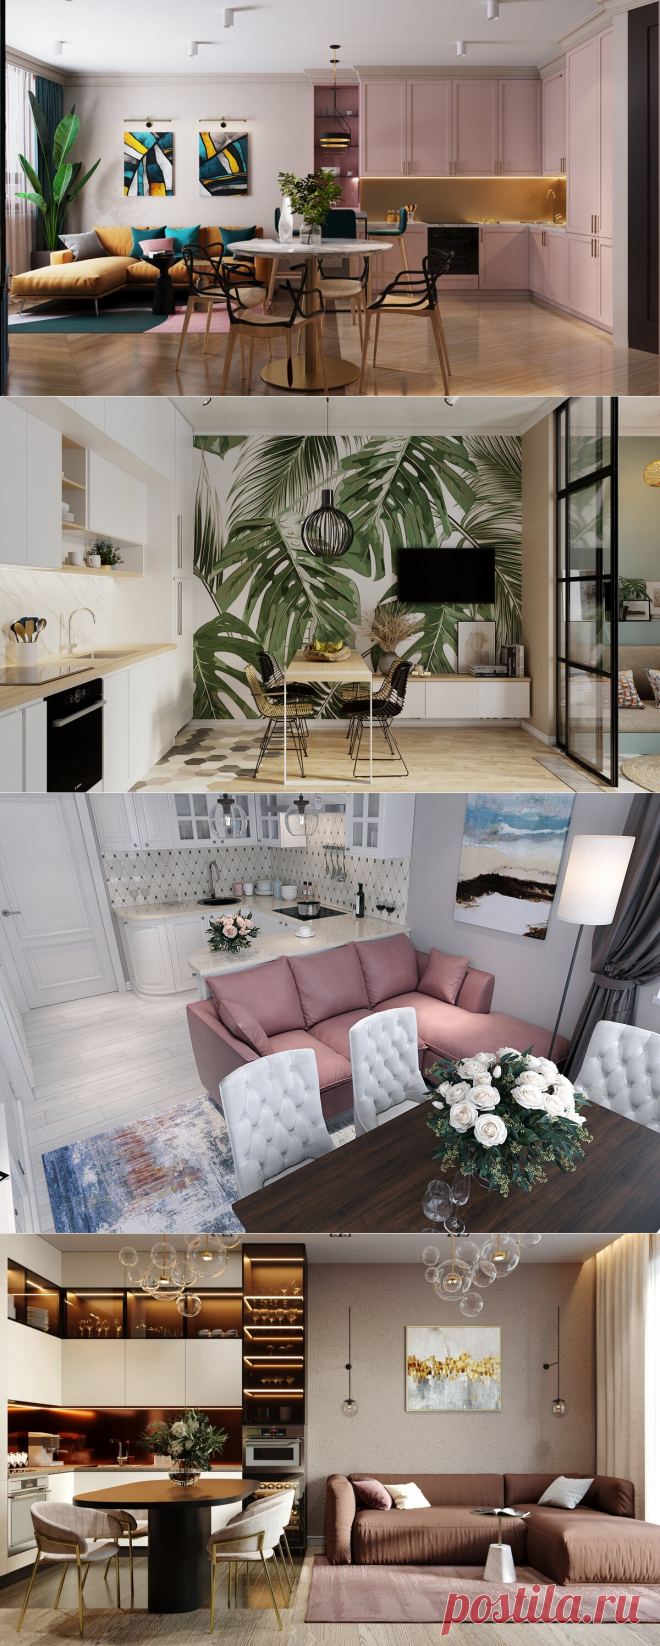 Как сделать гостиную стильной и уютной? 5 советов от дизайнера интерьеров | Блог YouDo | Яндекс Дзен